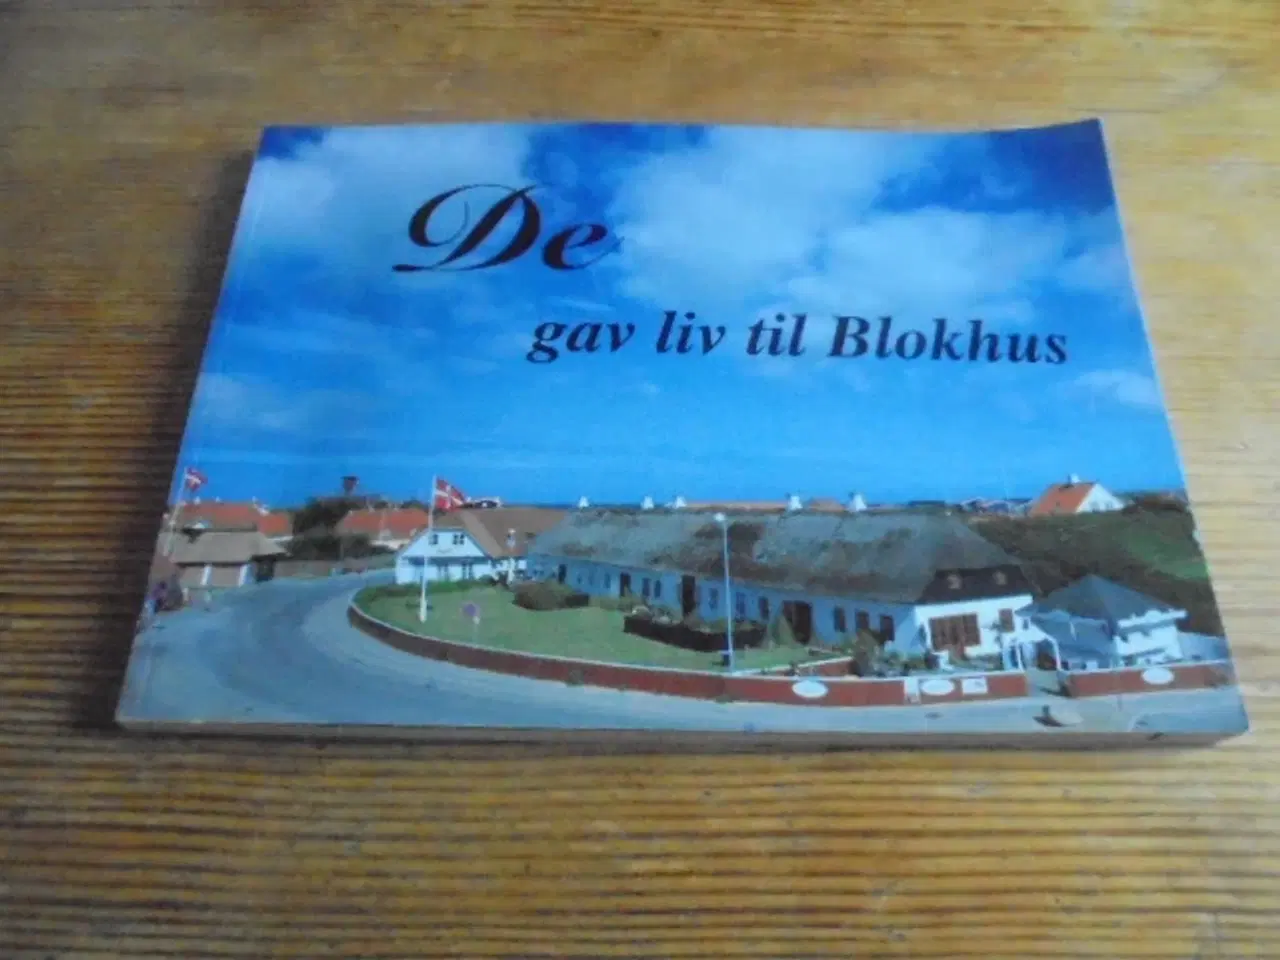 Billede 1 - De gav liv til Blokhus – se fotos og omtale 